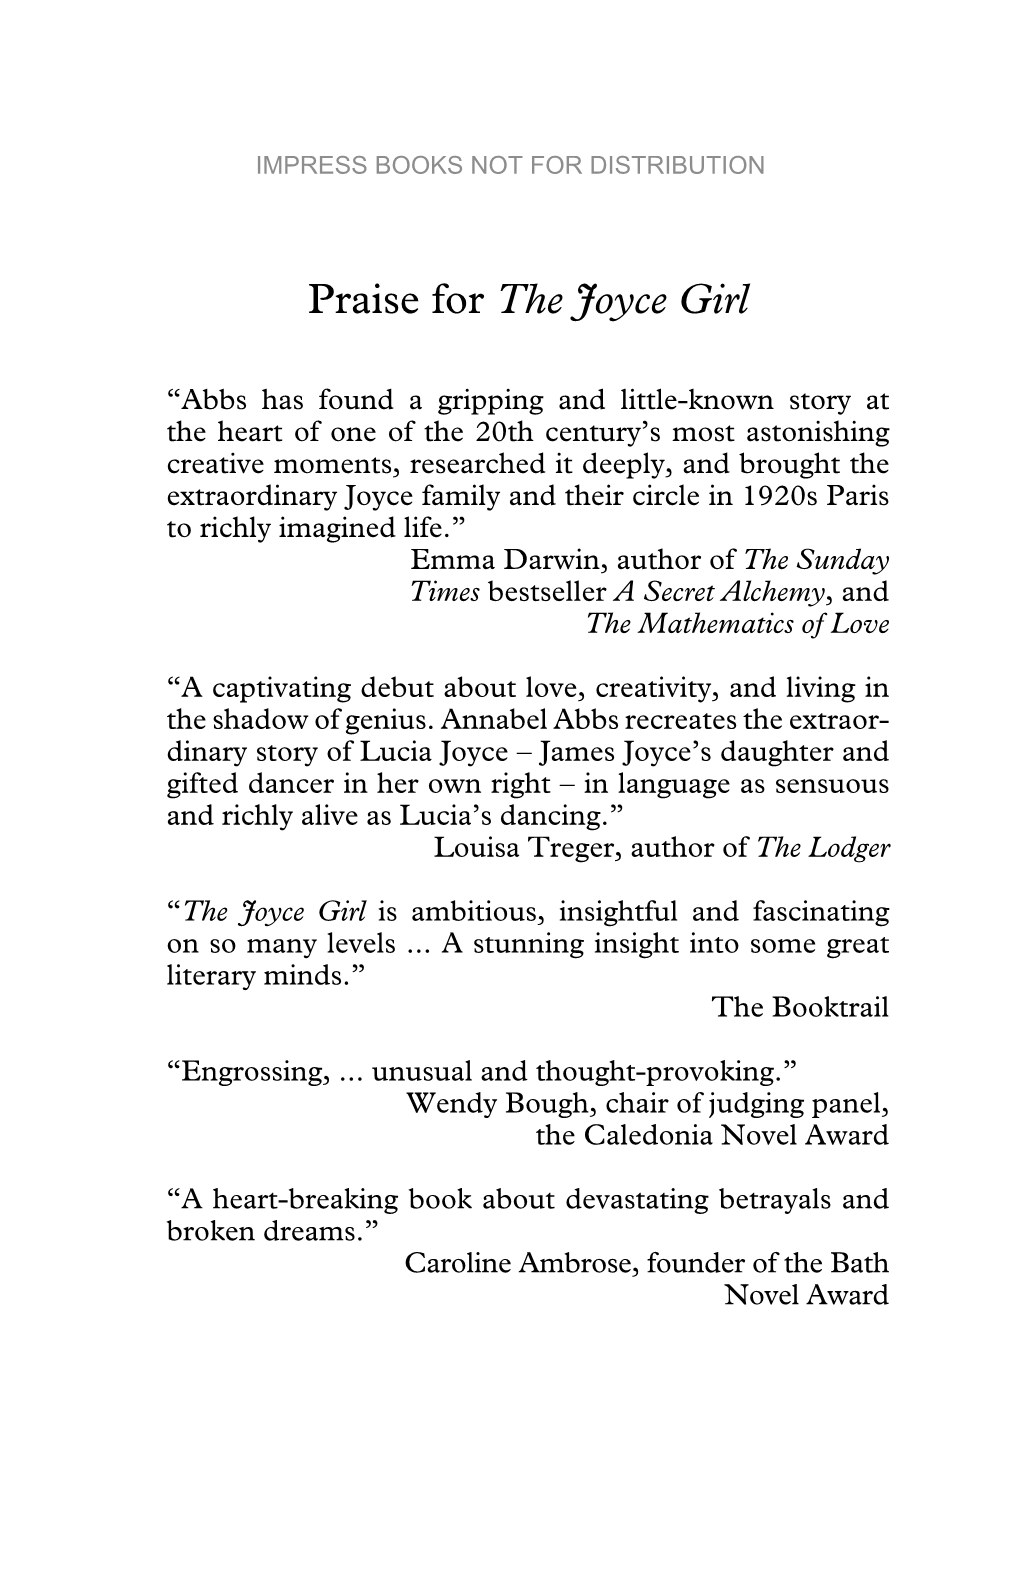 Praise for the Joyce Girl